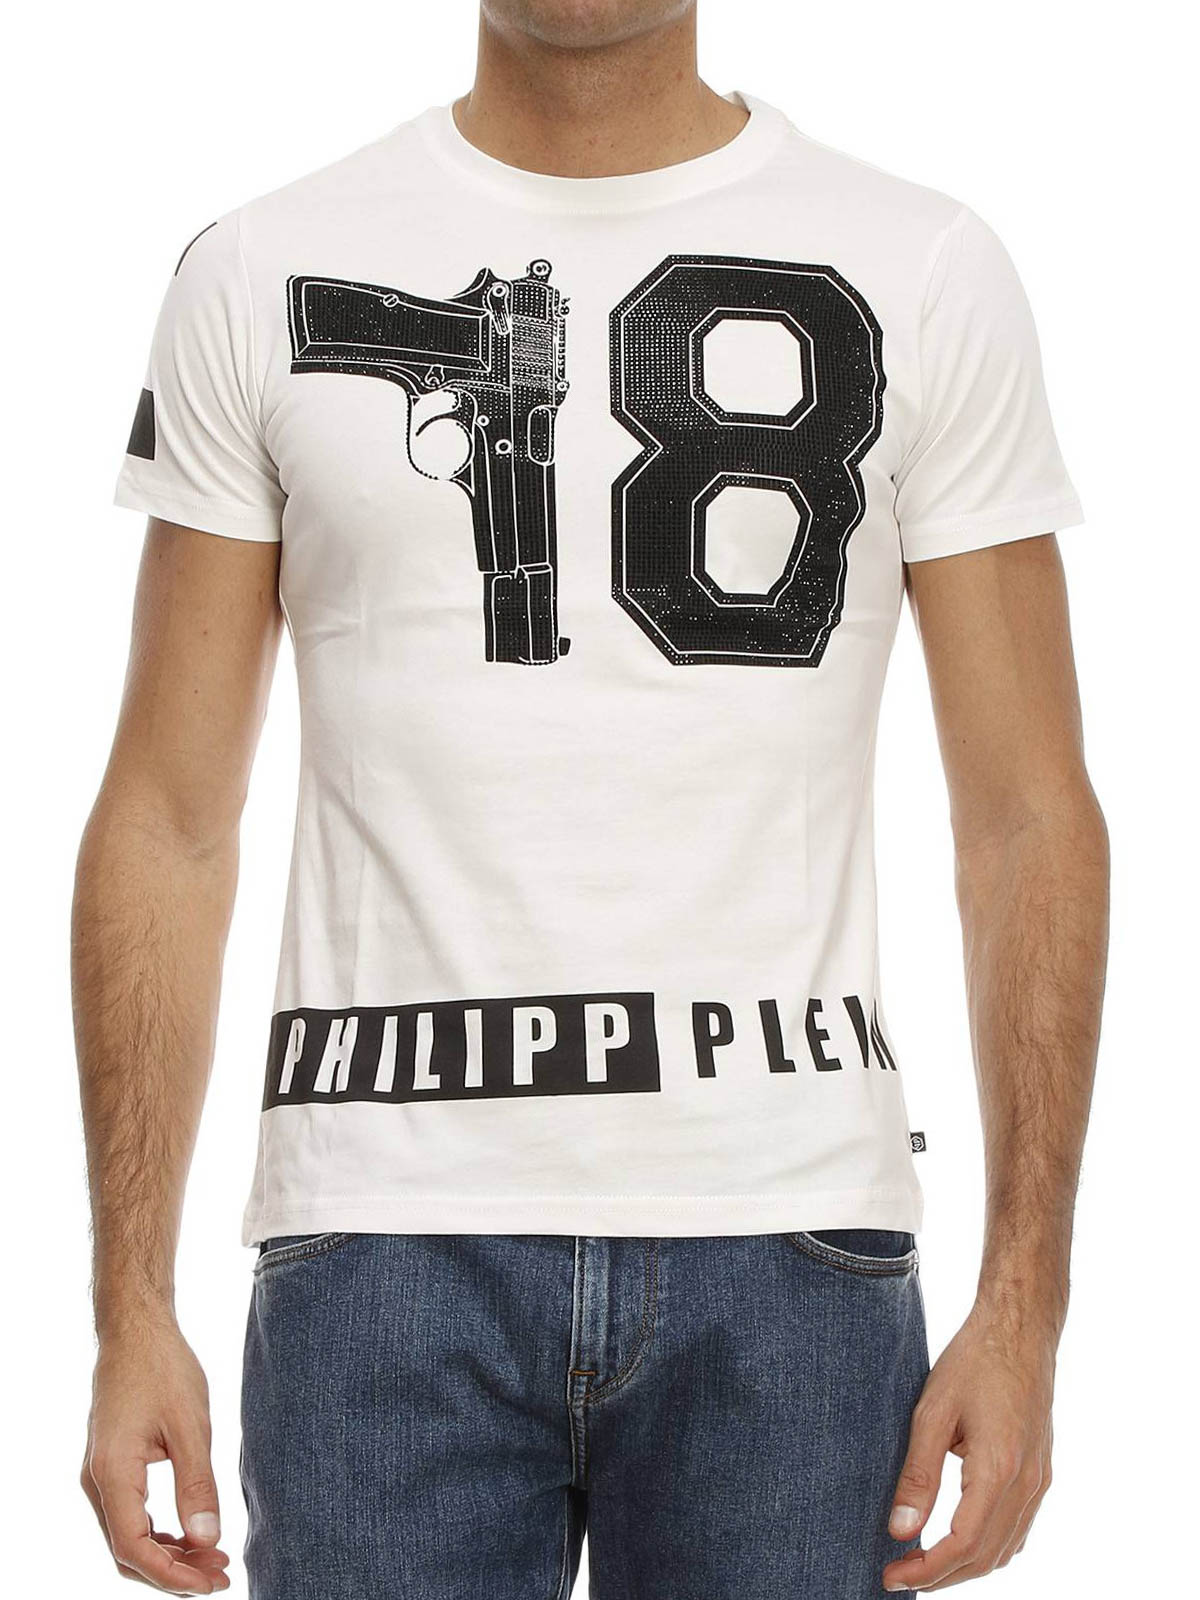 philippe plein tshirt